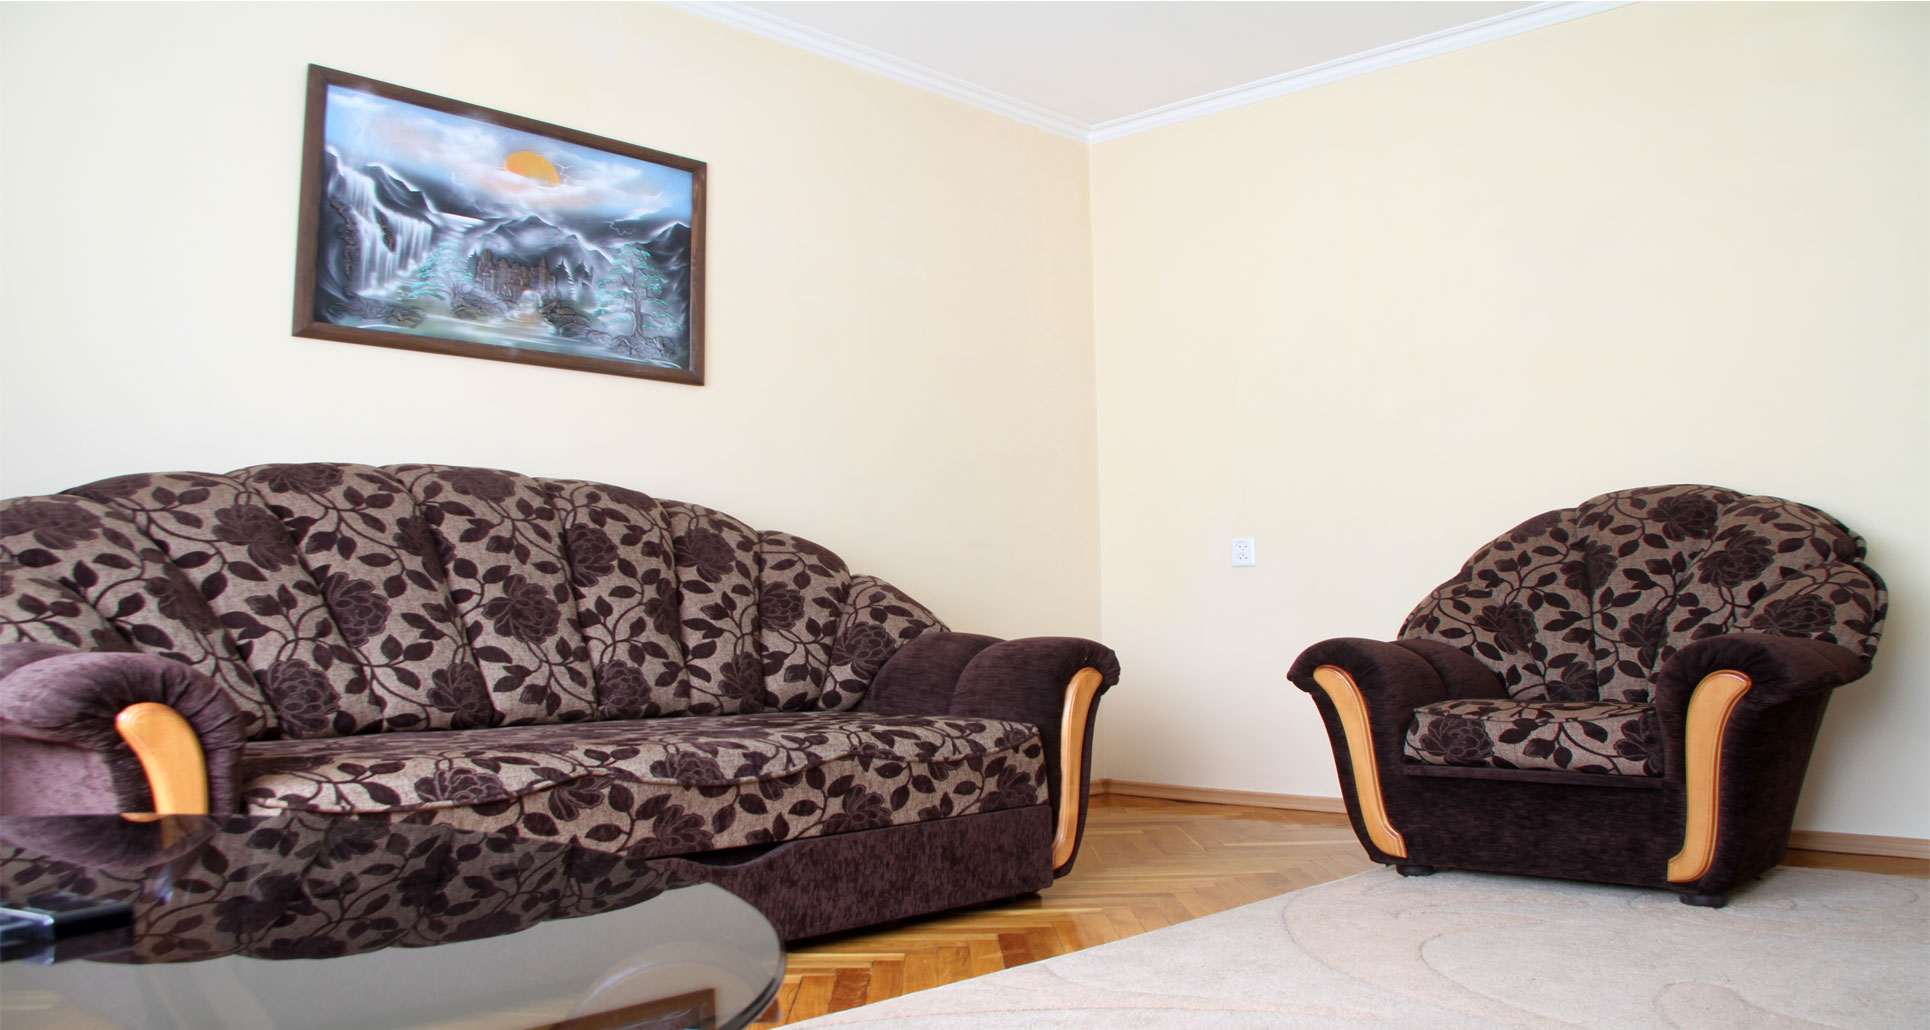 Grand Central Apartment è un appartamento di 4 stanze in affitto a Chisinau, Moldova